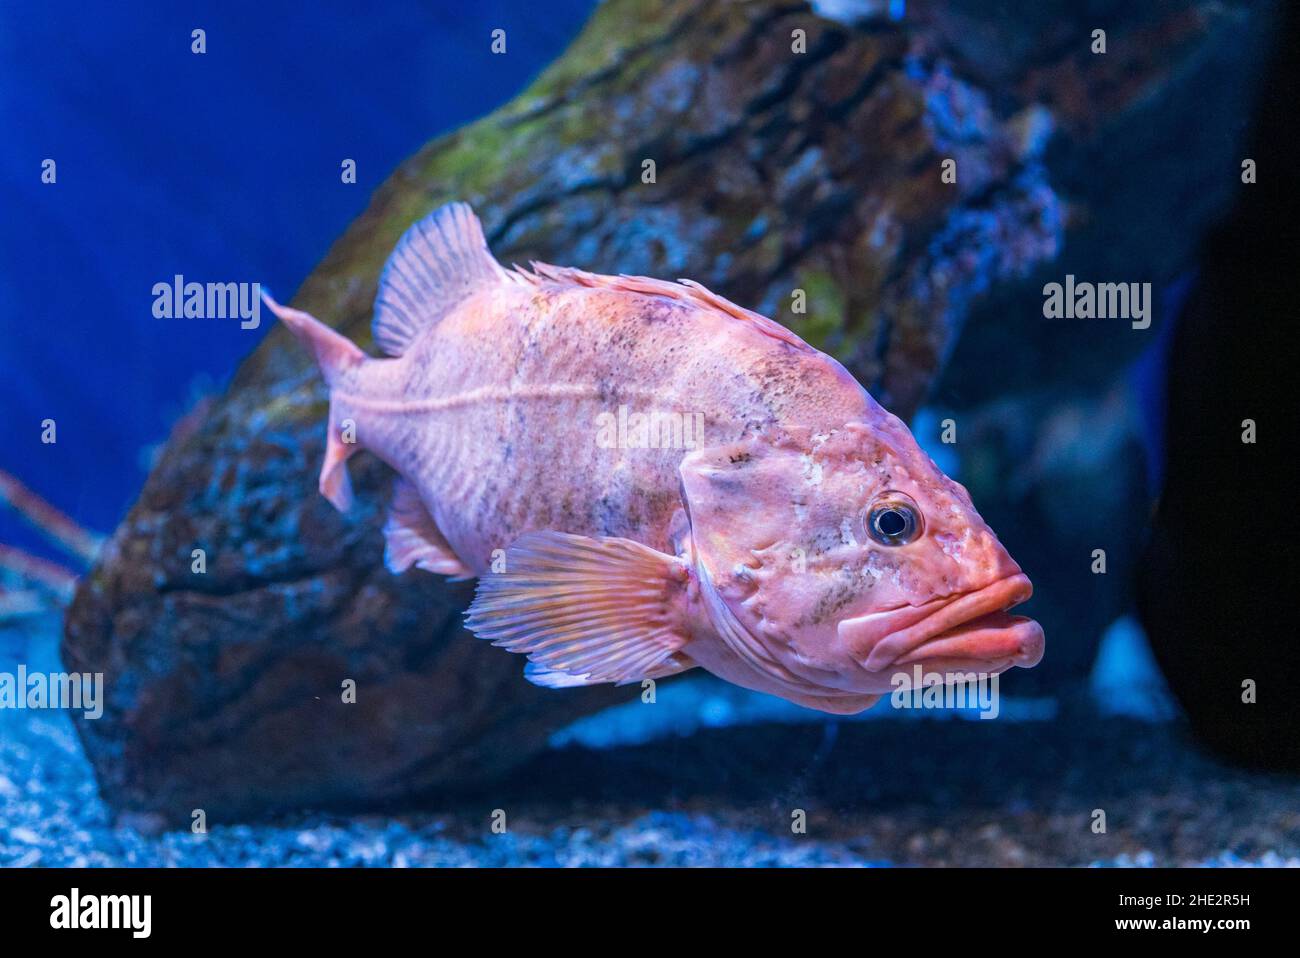 Rougheye rockfish swimming underwater Stock Photo